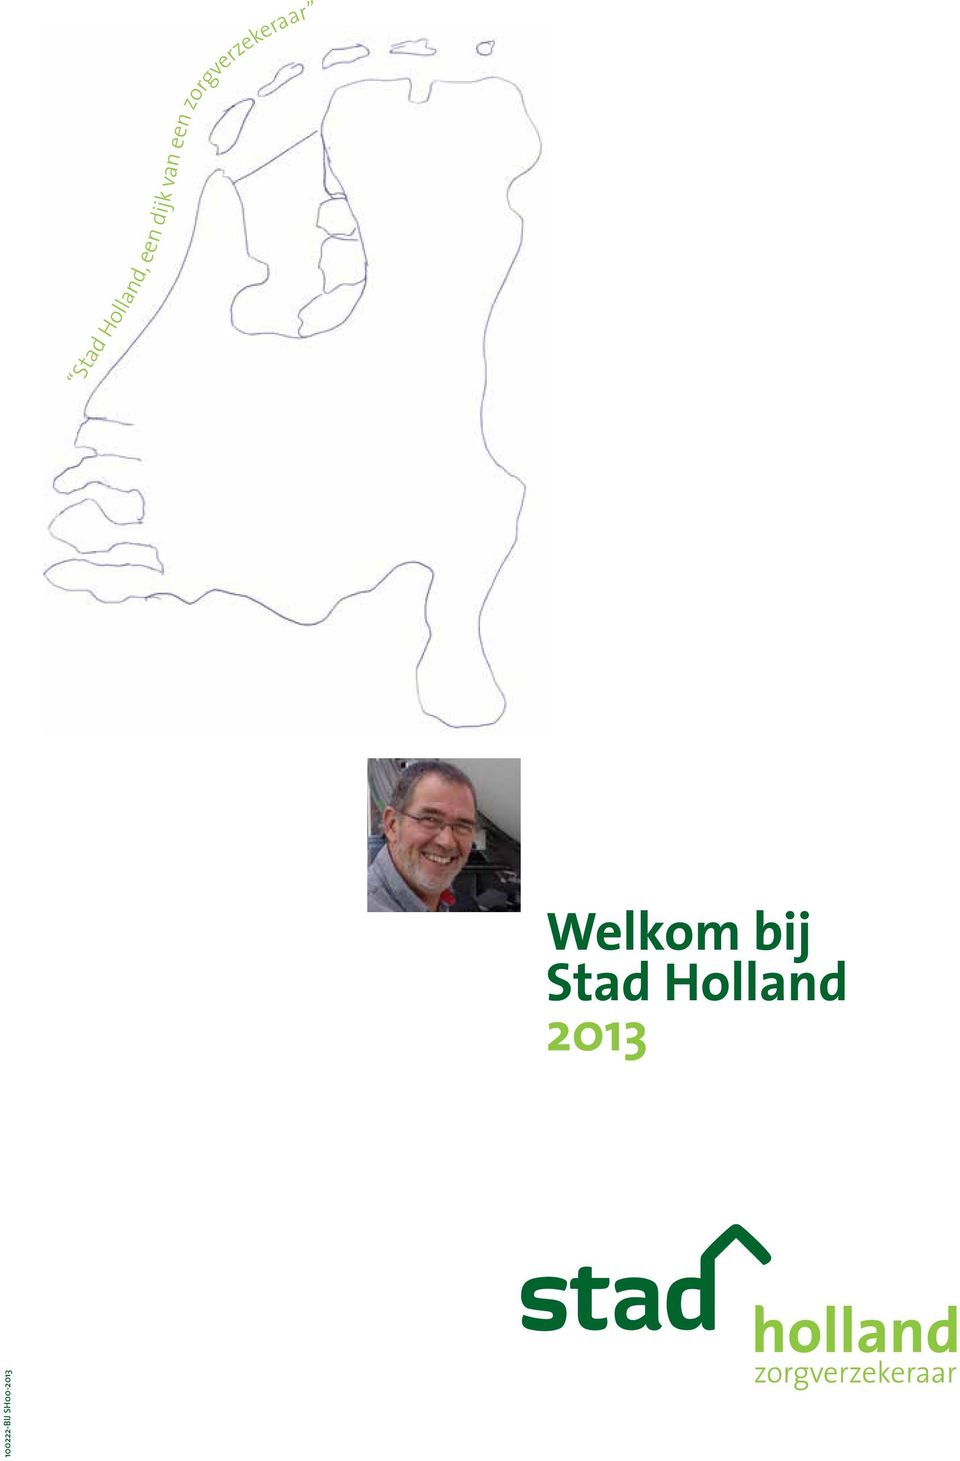 Welkom bij Stad Holland